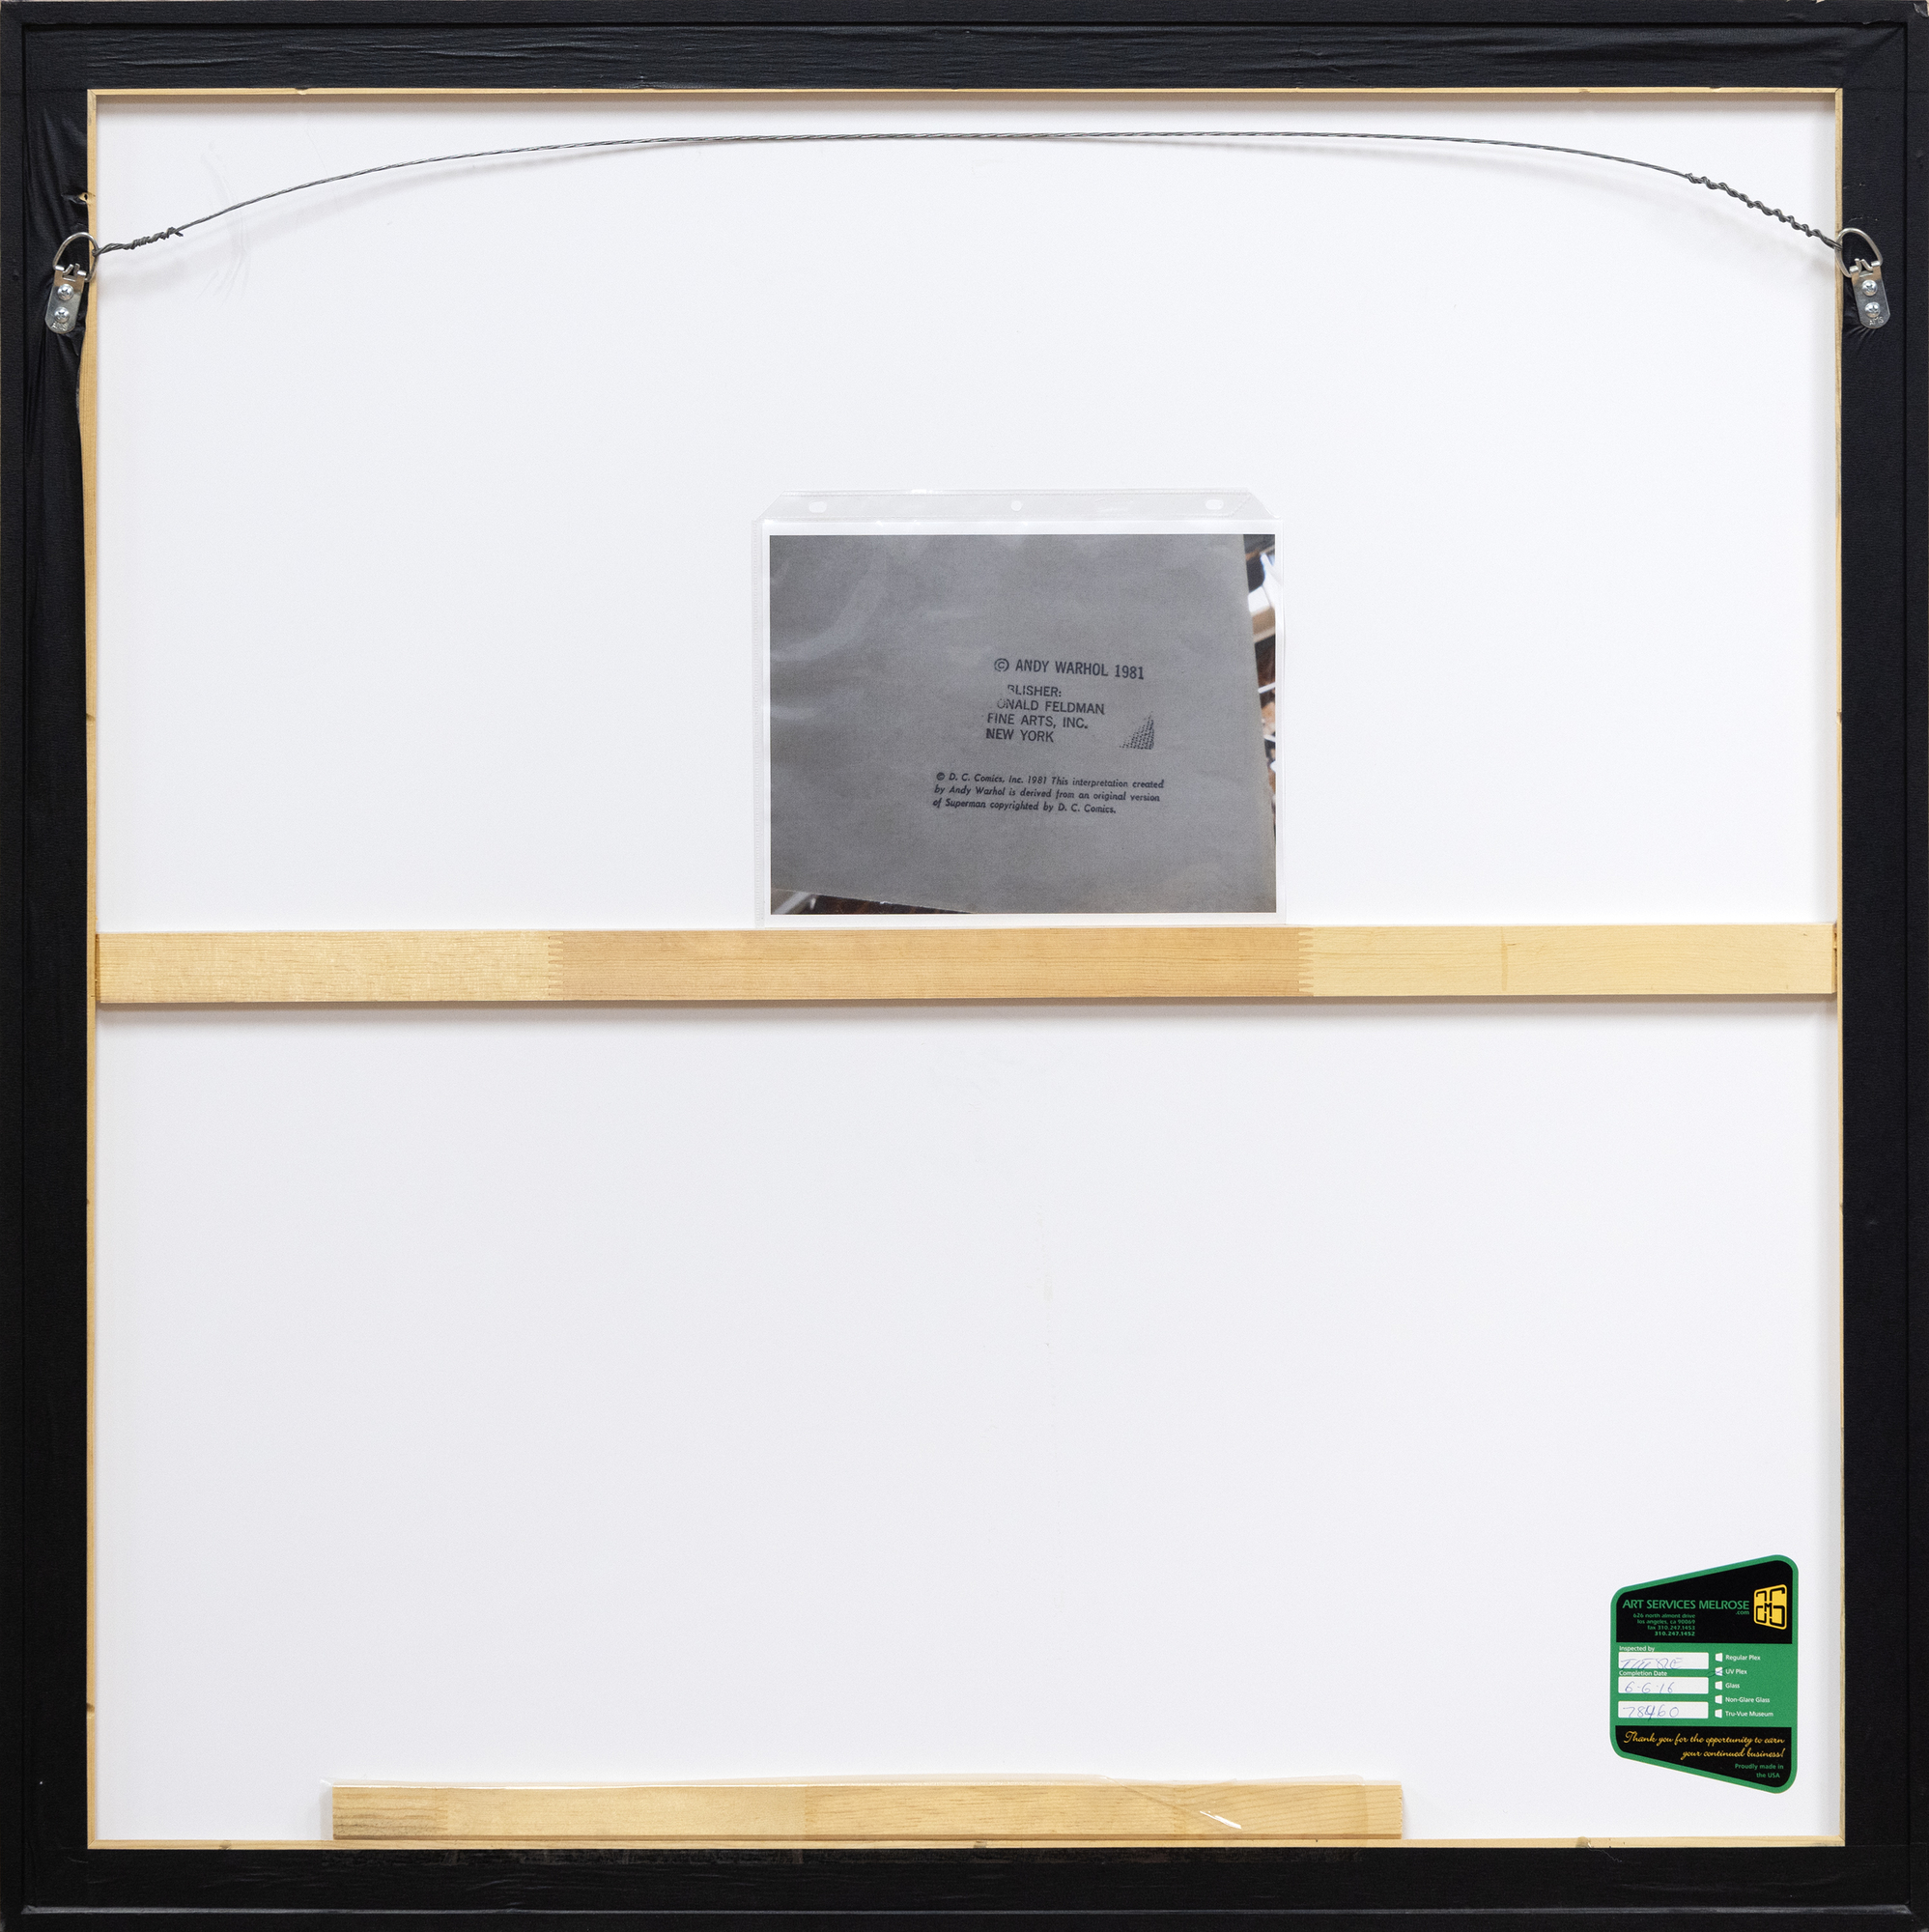 آندي وارهول - سوبرمان (II.260) - طباعة الشاشة - 38 × 38 بوصة.